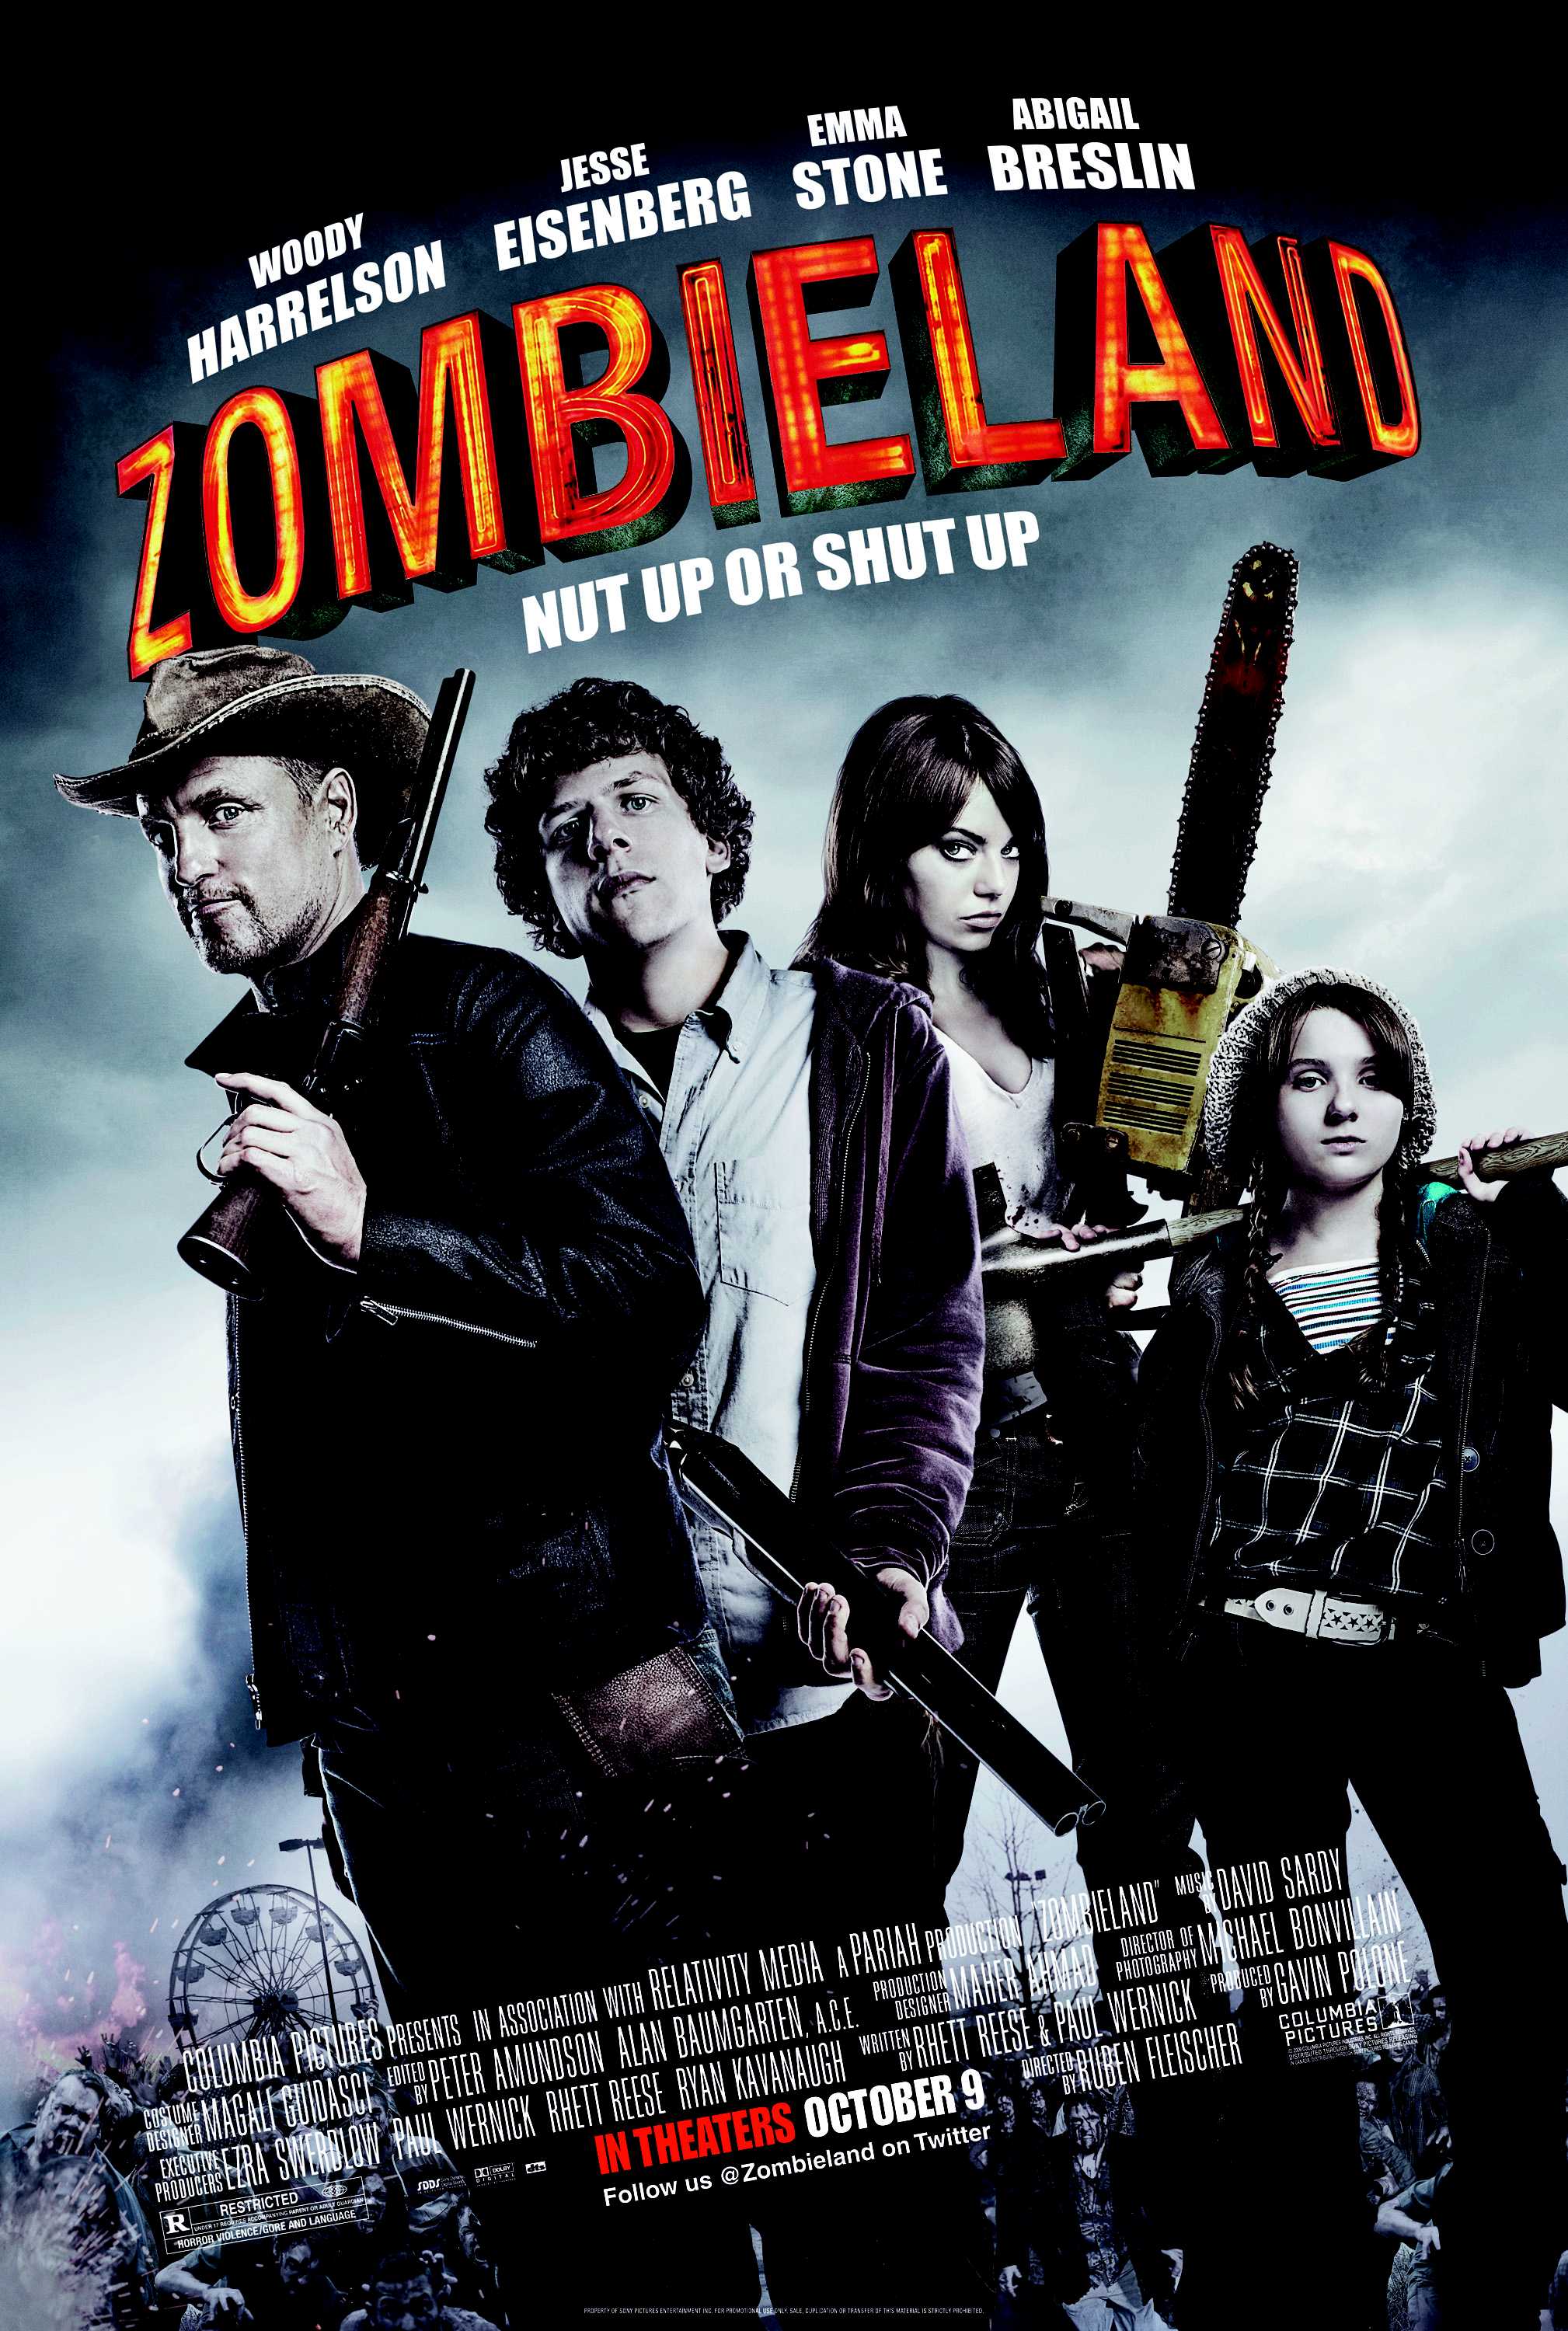 Emma Stone, Zombieland, Abigail Breslin, Jesse Eisenberg, Woody Harrelson, movie posters - desktop wallpaper